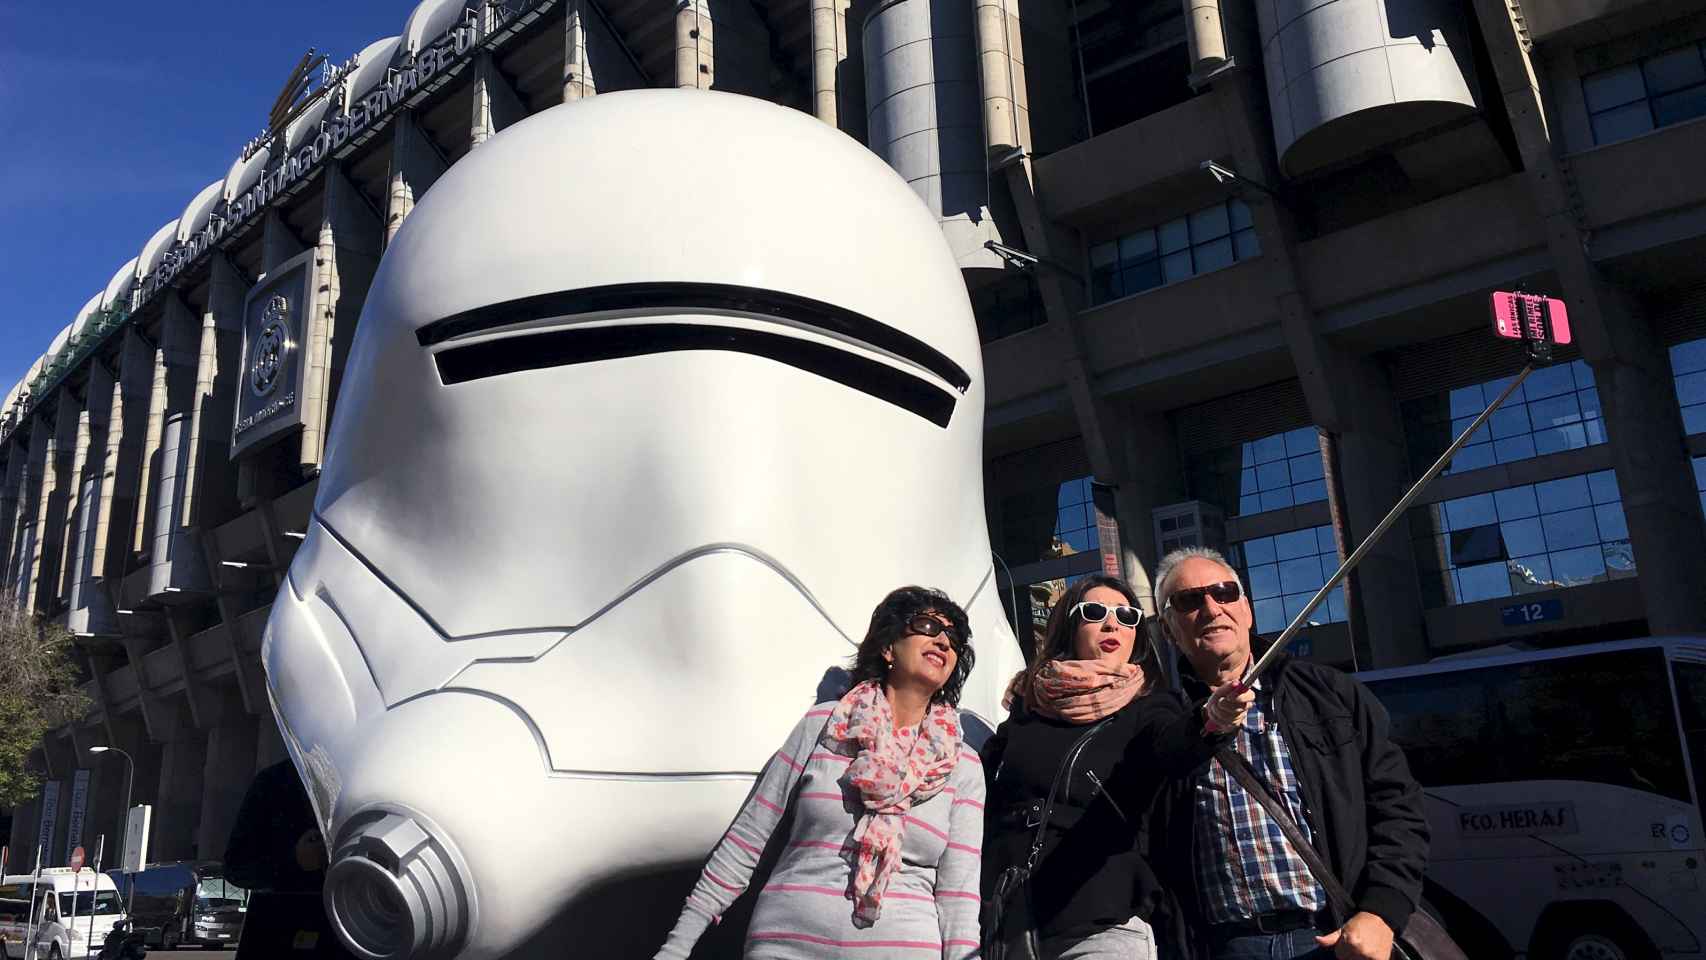 Los turistas se fotografían frente a un busto de Star Wars frente al Bernabéu.